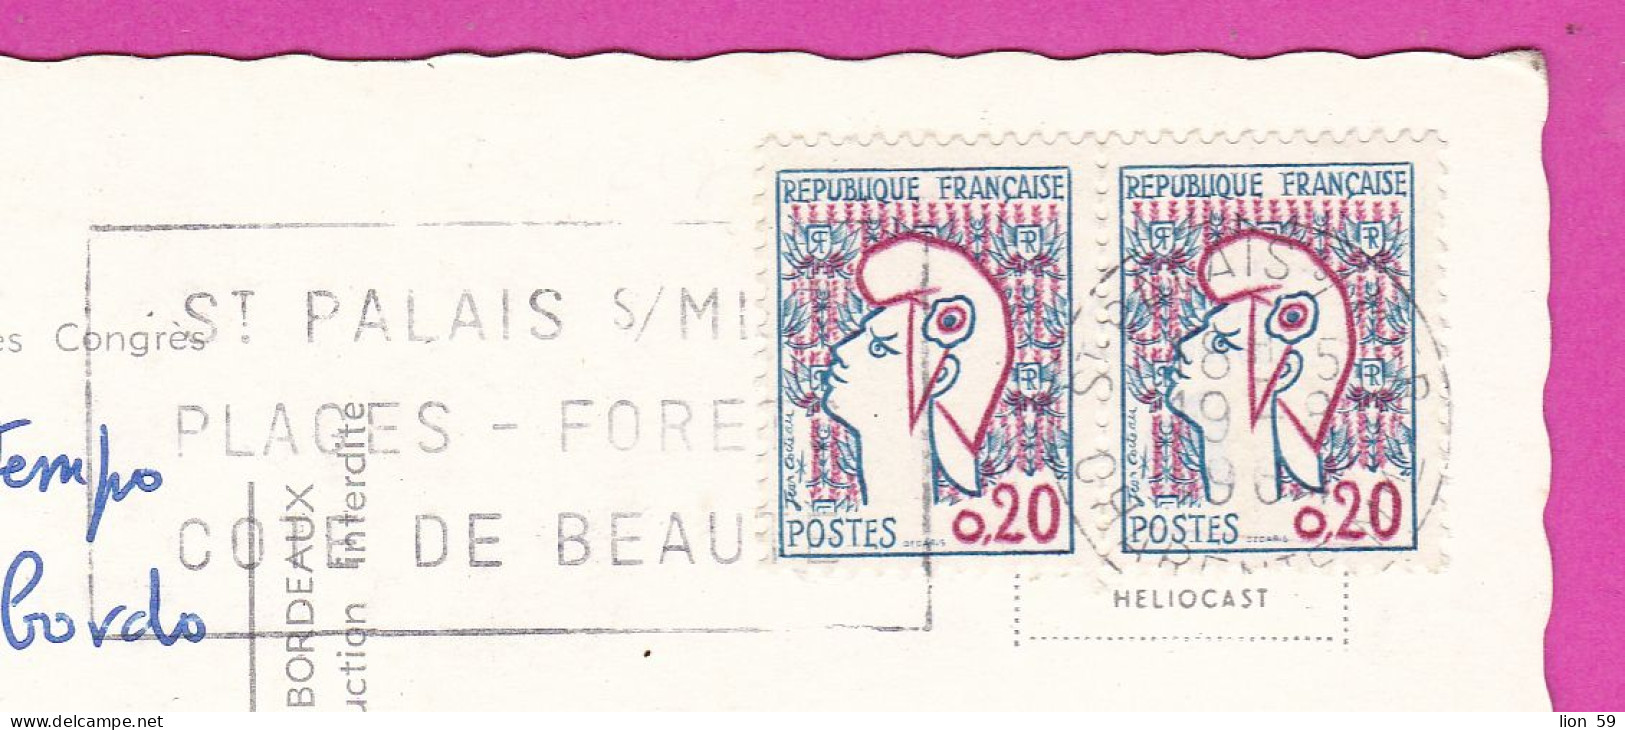 294106 / France - ROYAN Palais Des Congres PC 1968 USED 0.20+0.20 Fr. Marianne De Cocteau Flamme ST PALAIS S/MER PLAGES - Covers & Documents